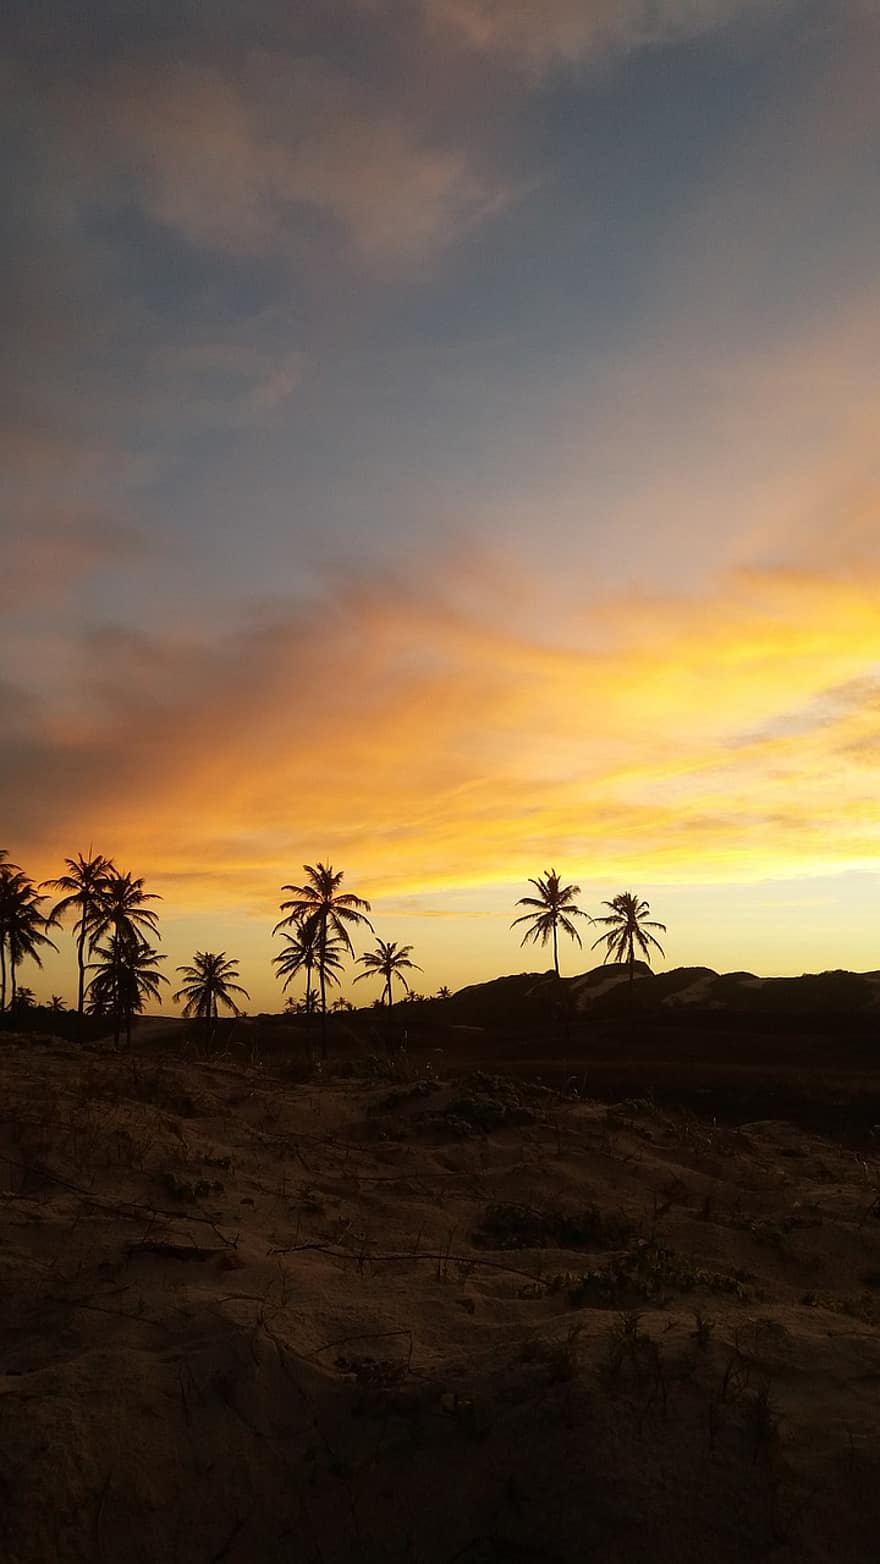 puesta de sol, palmeras, arena, silueta, cielo, nubes, arboles, tropical, costa, paisaje, naturaleza